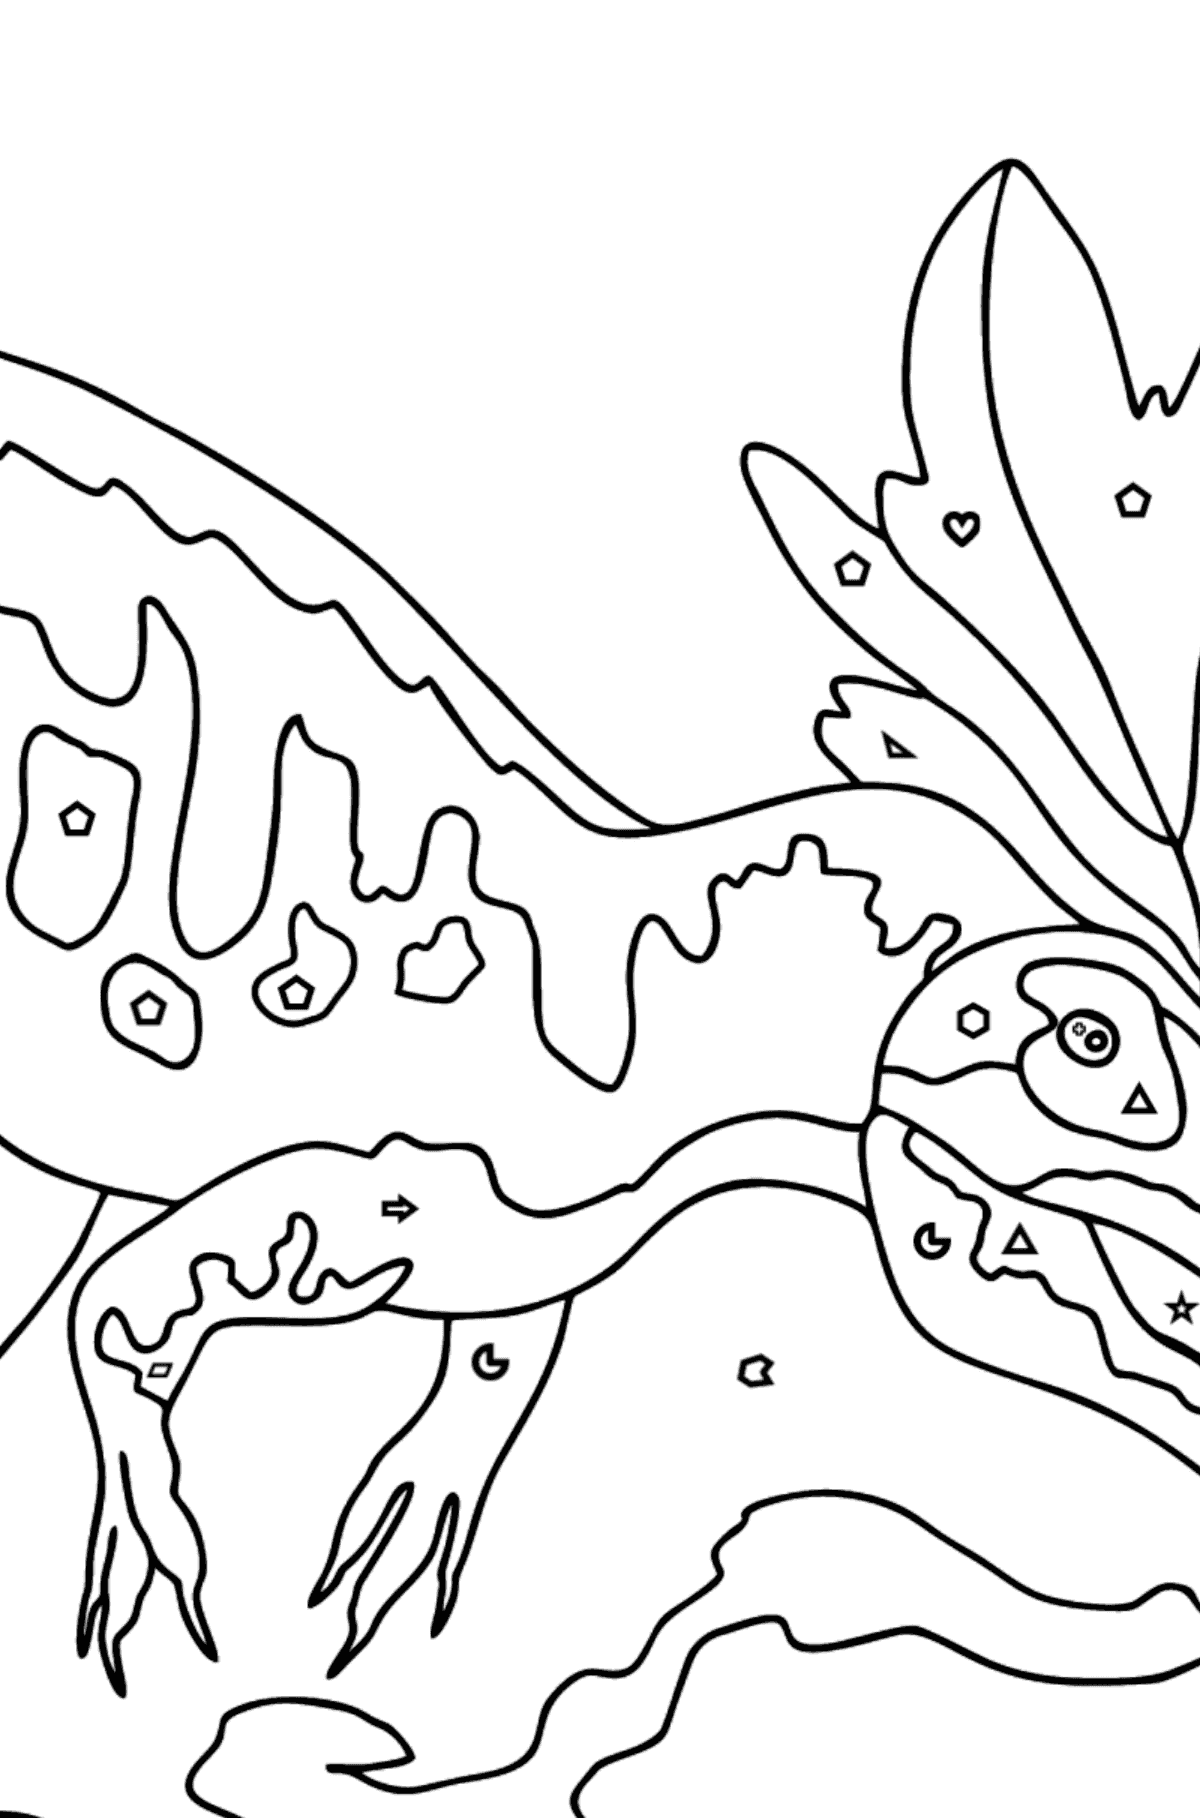 Desenho para colorir Allosaurus (difícil) - Colorir por Formas Geométricas para Crianças